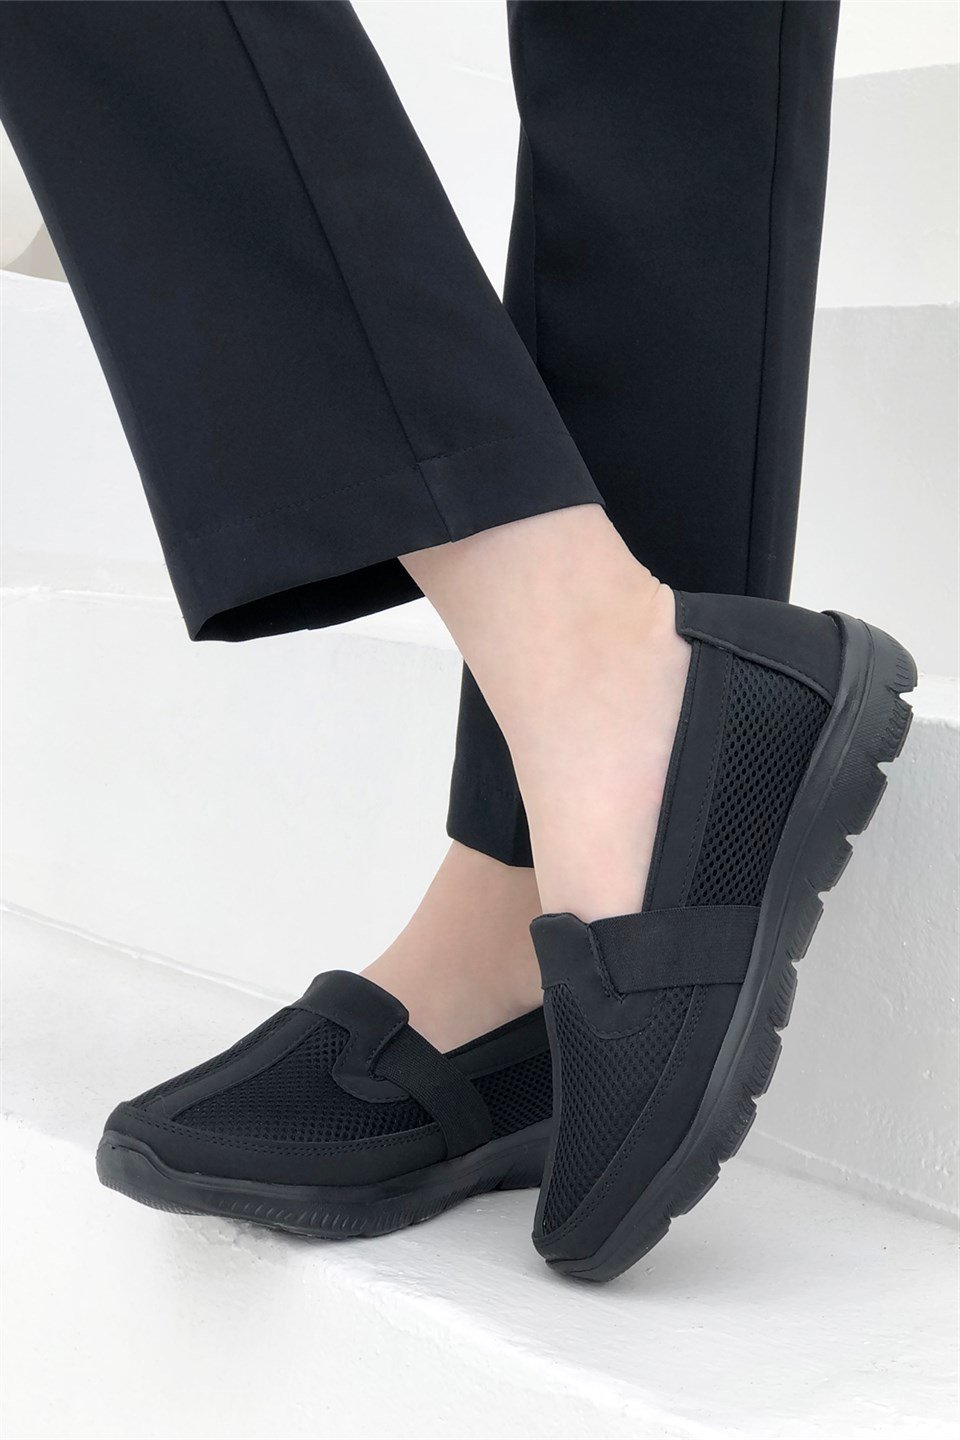 Carla Bella Ortapedik Günlük Kadın Anatomik Ayakkabı Siyah S-1040 | Mybella  Shoes